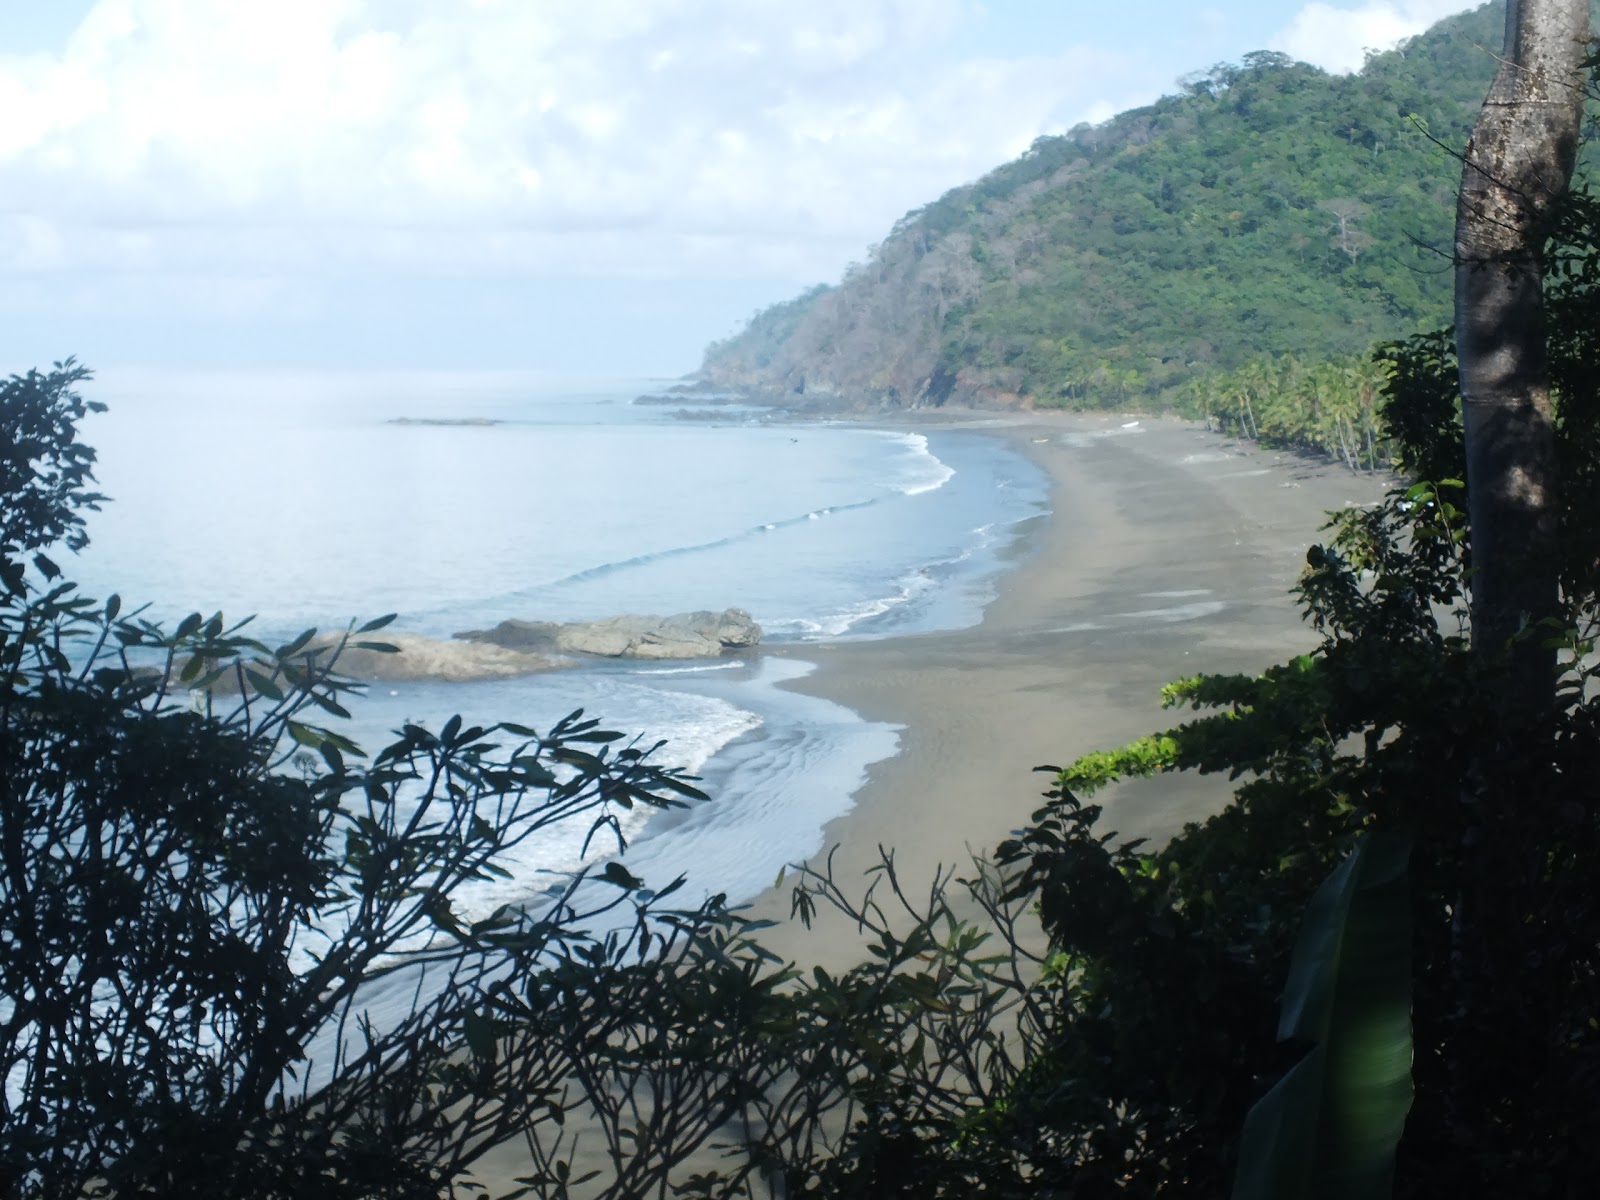 Zdjęcie Playa Muerto - popularne miejsce wśród znawców relaksu